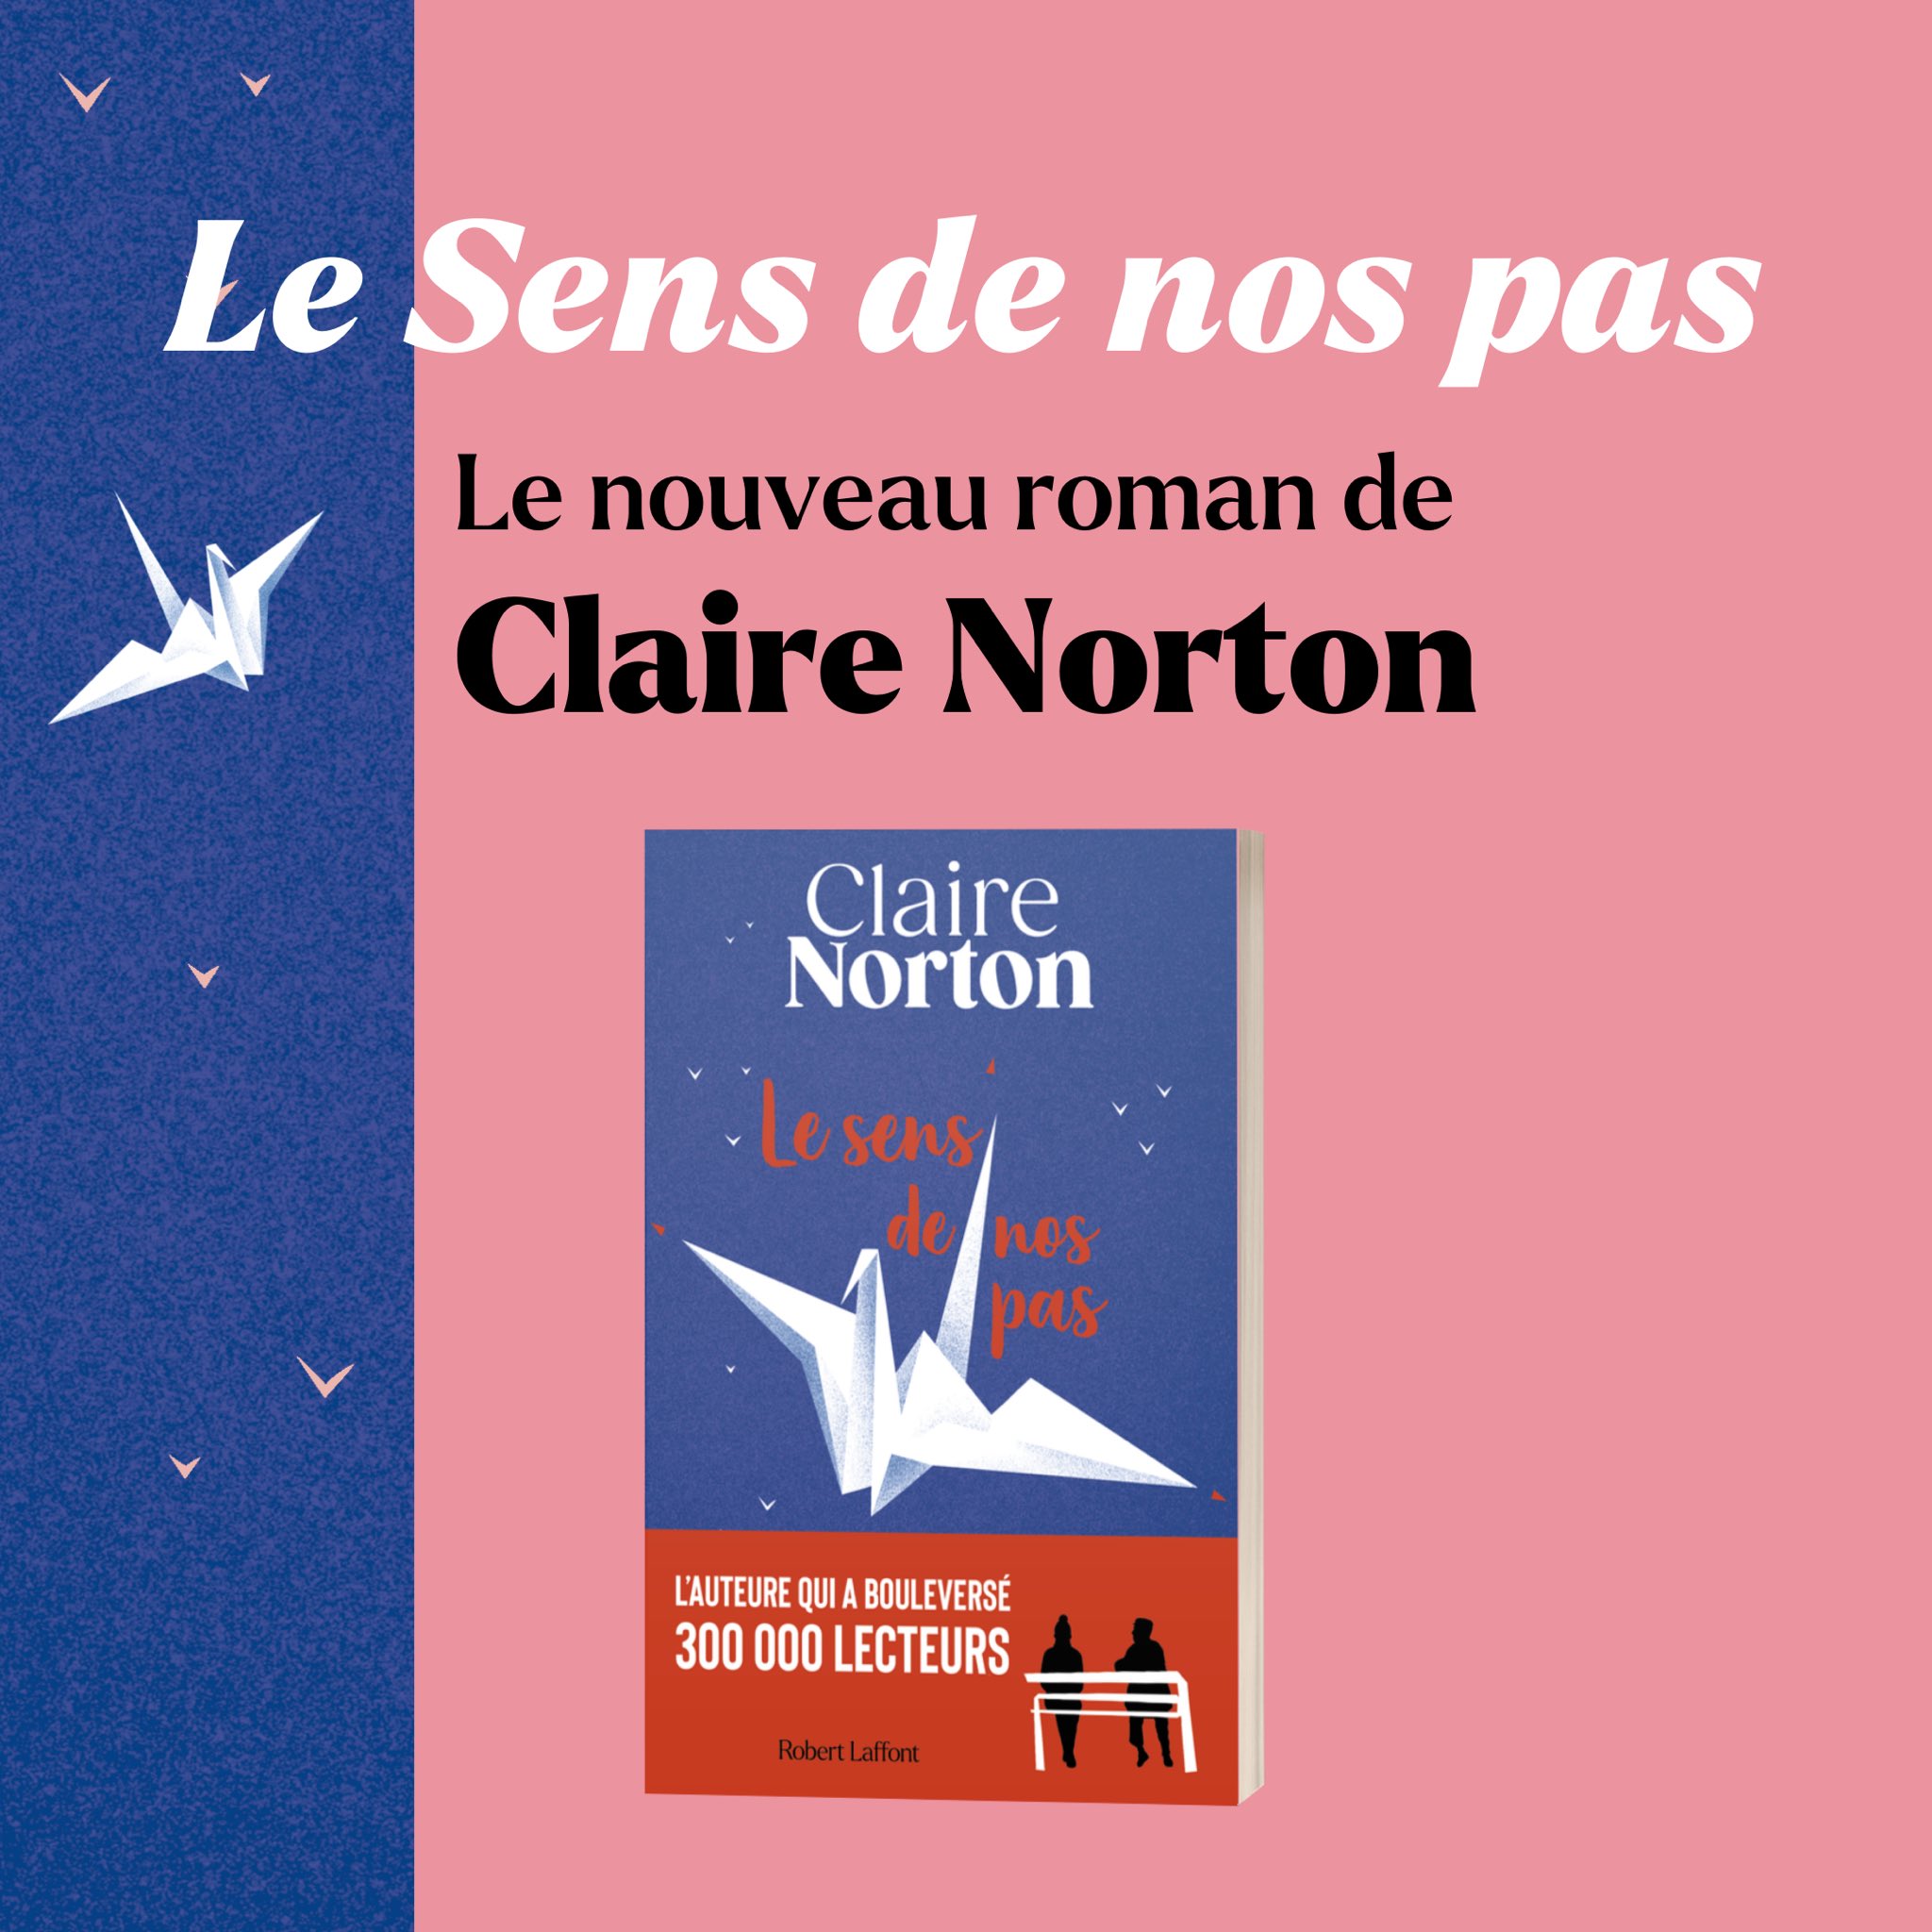 Robert Laffont on X: ✨ « Le Sens de nos pas » de Claire Norton est à  découvrir en librairie. 📖 Le nouveau roman de l'auteure qui a bouleversé  300 000 lecteurs. #